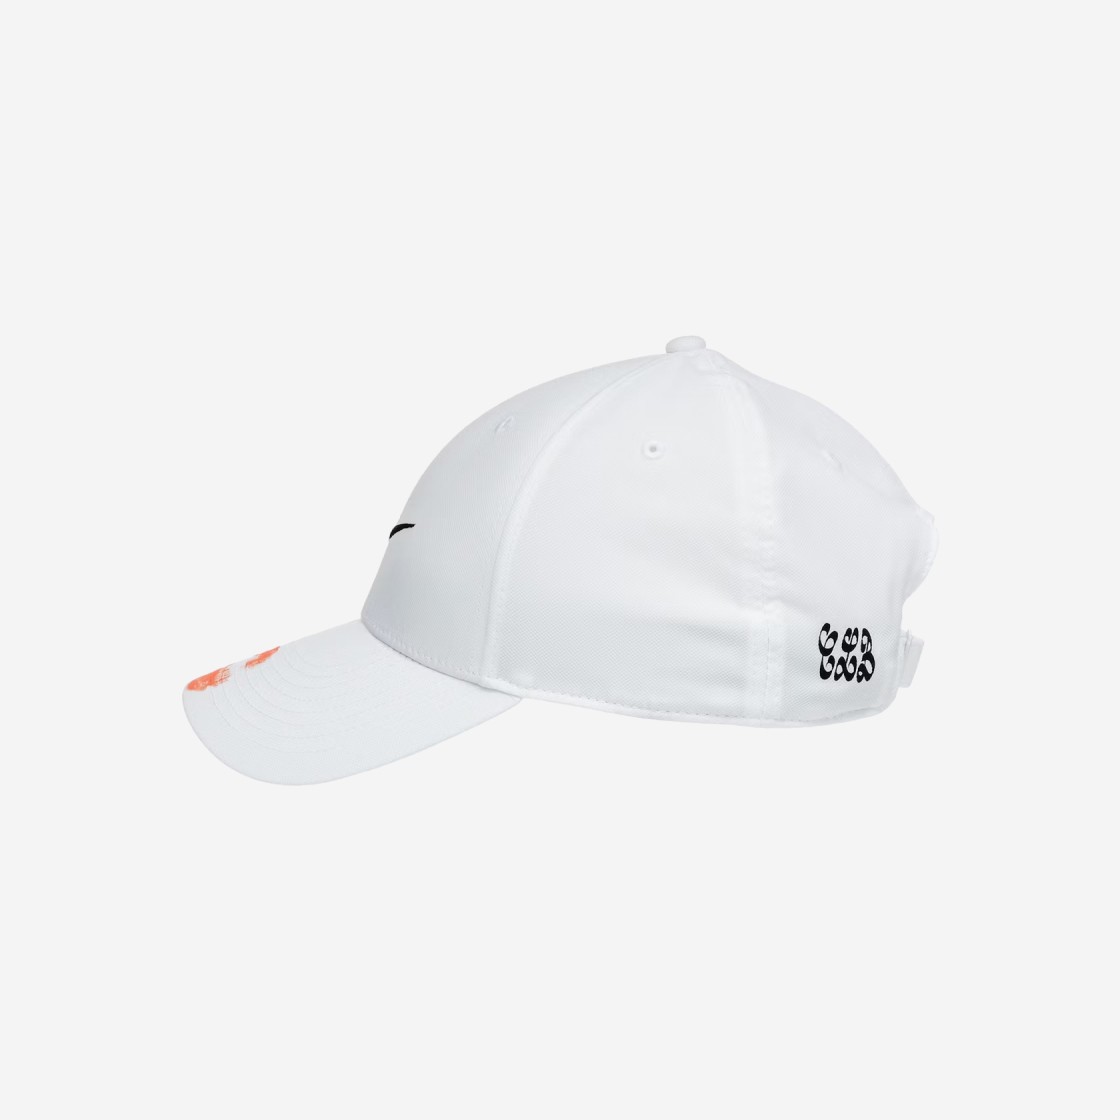 Buy Nike Certified Lover Boy Hat 'White' - DD9085 100